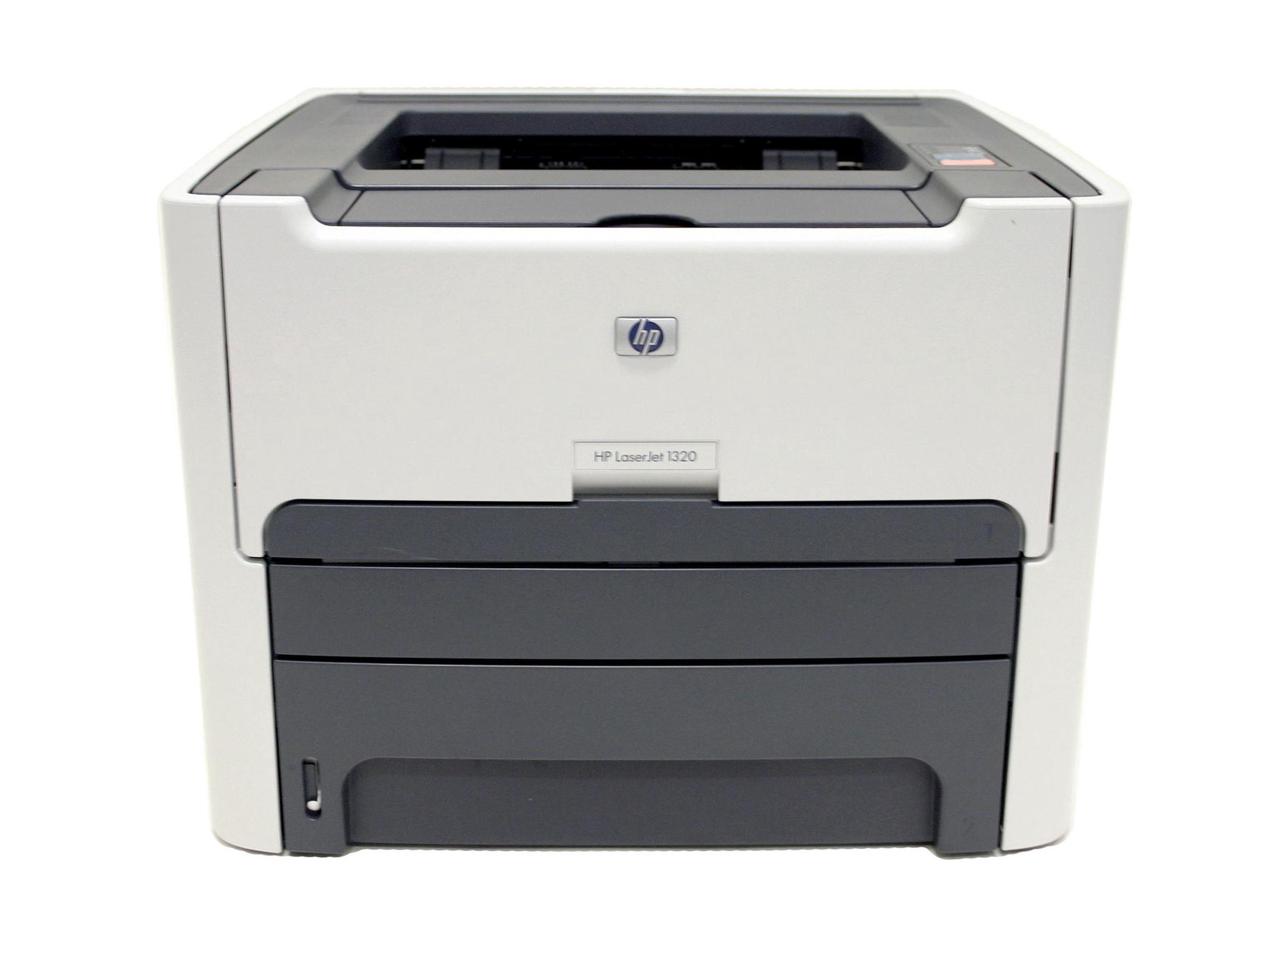 HP LaserJet 1320 Monochrome Laser Printer | Tech Nuggets